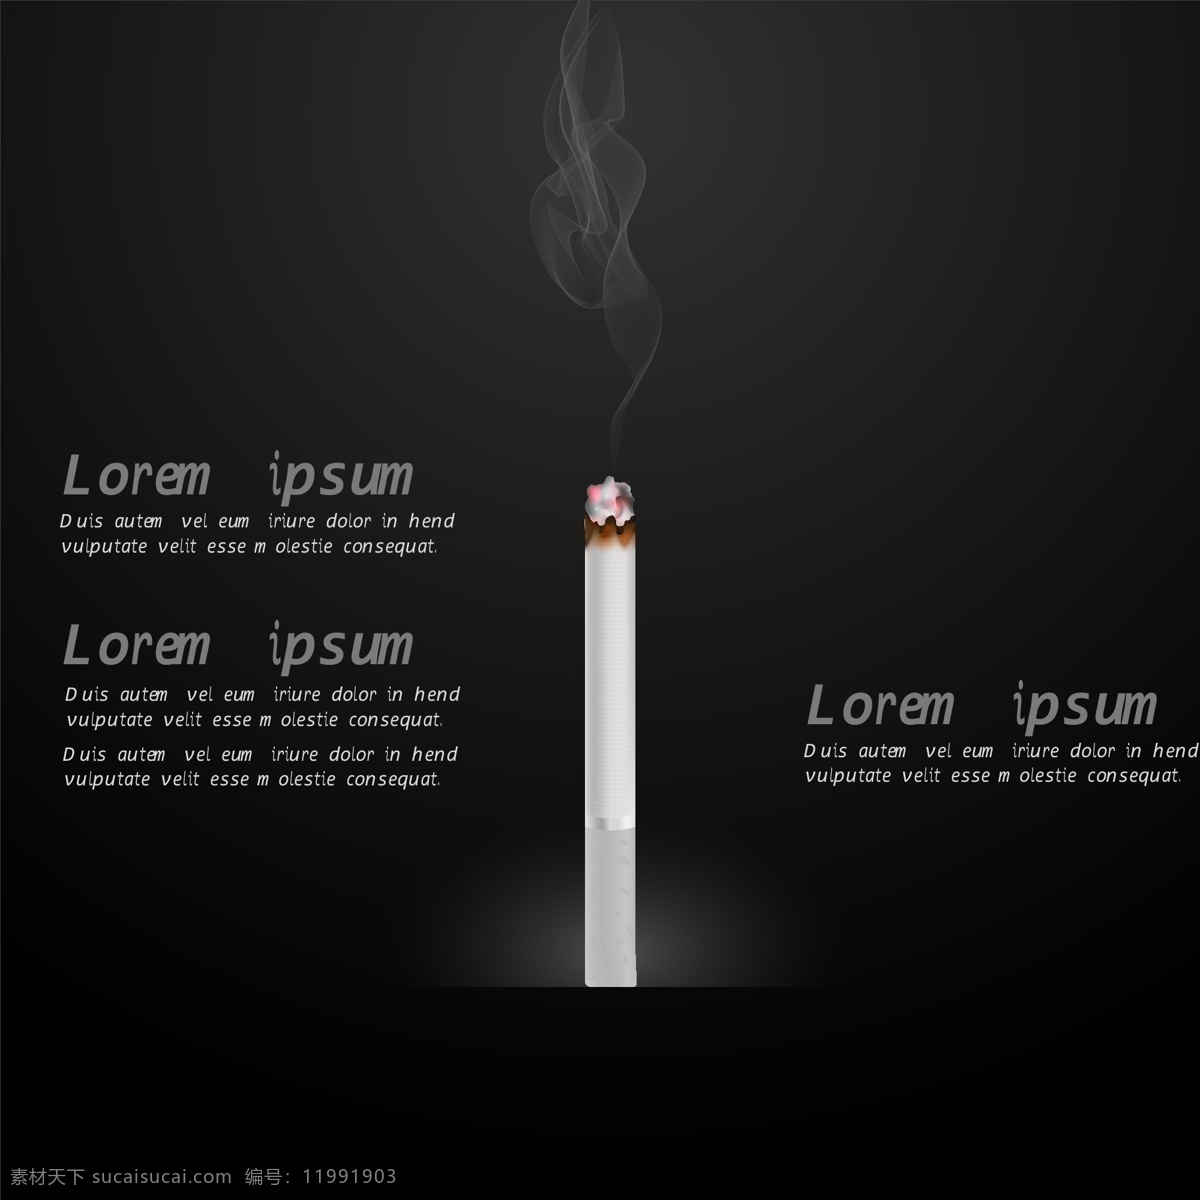 香烟矢量插图 图标设计 烟 图形 法 平面设计 符号 吸烟 蒸汽 概念 雪茄 烟草成瘾 习惯 最新矢量素材 黑色